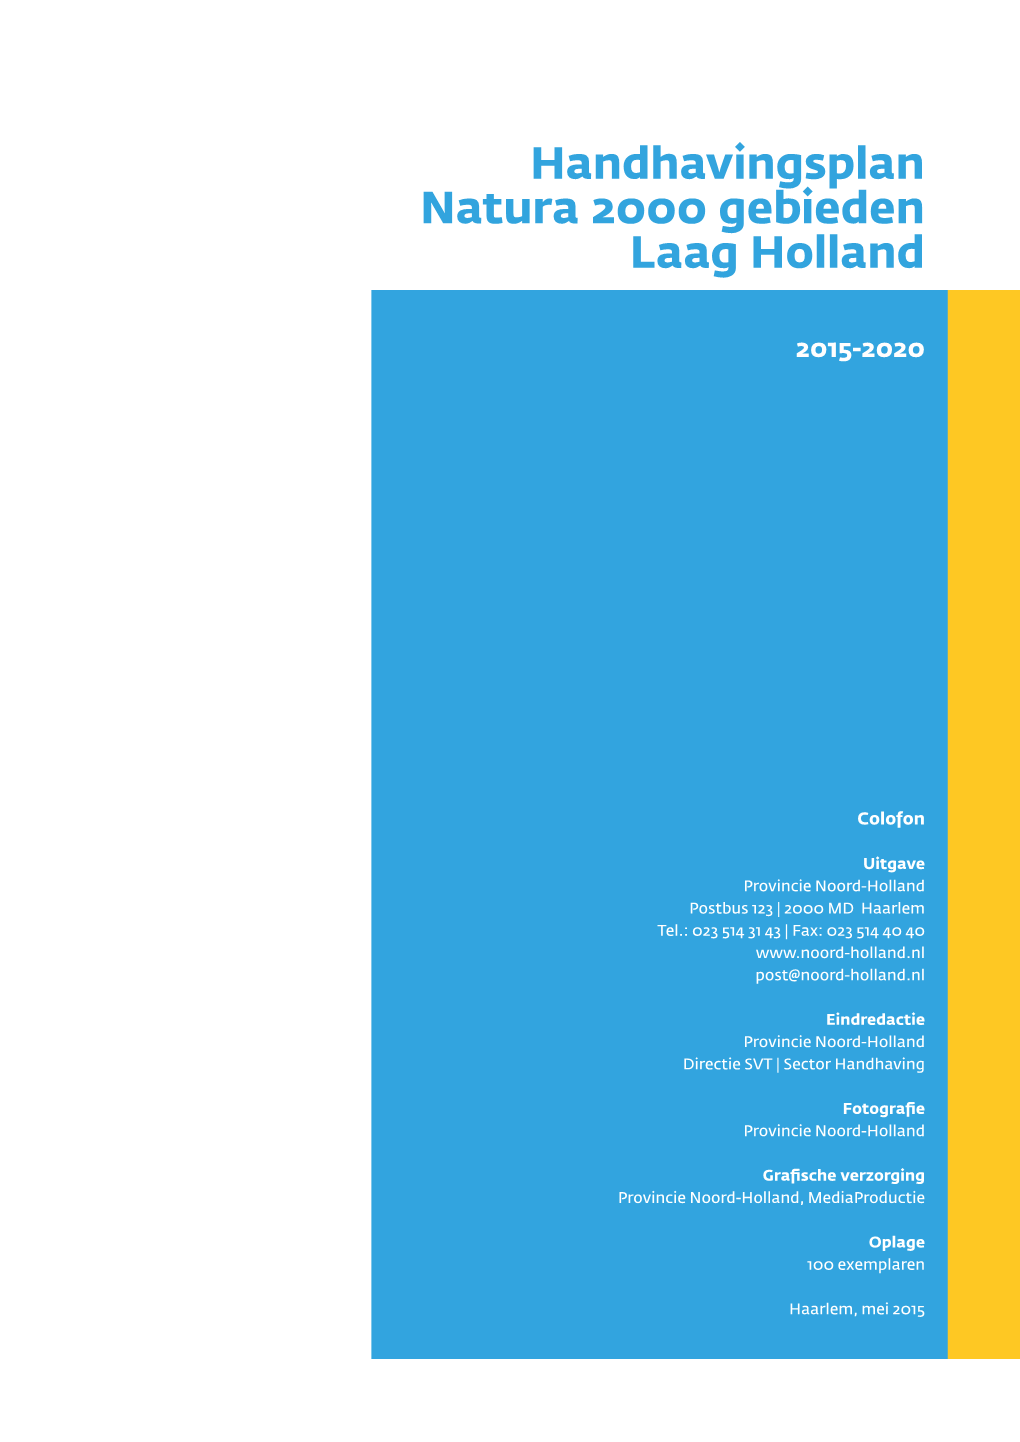 Handhavingsplan Laag Holland